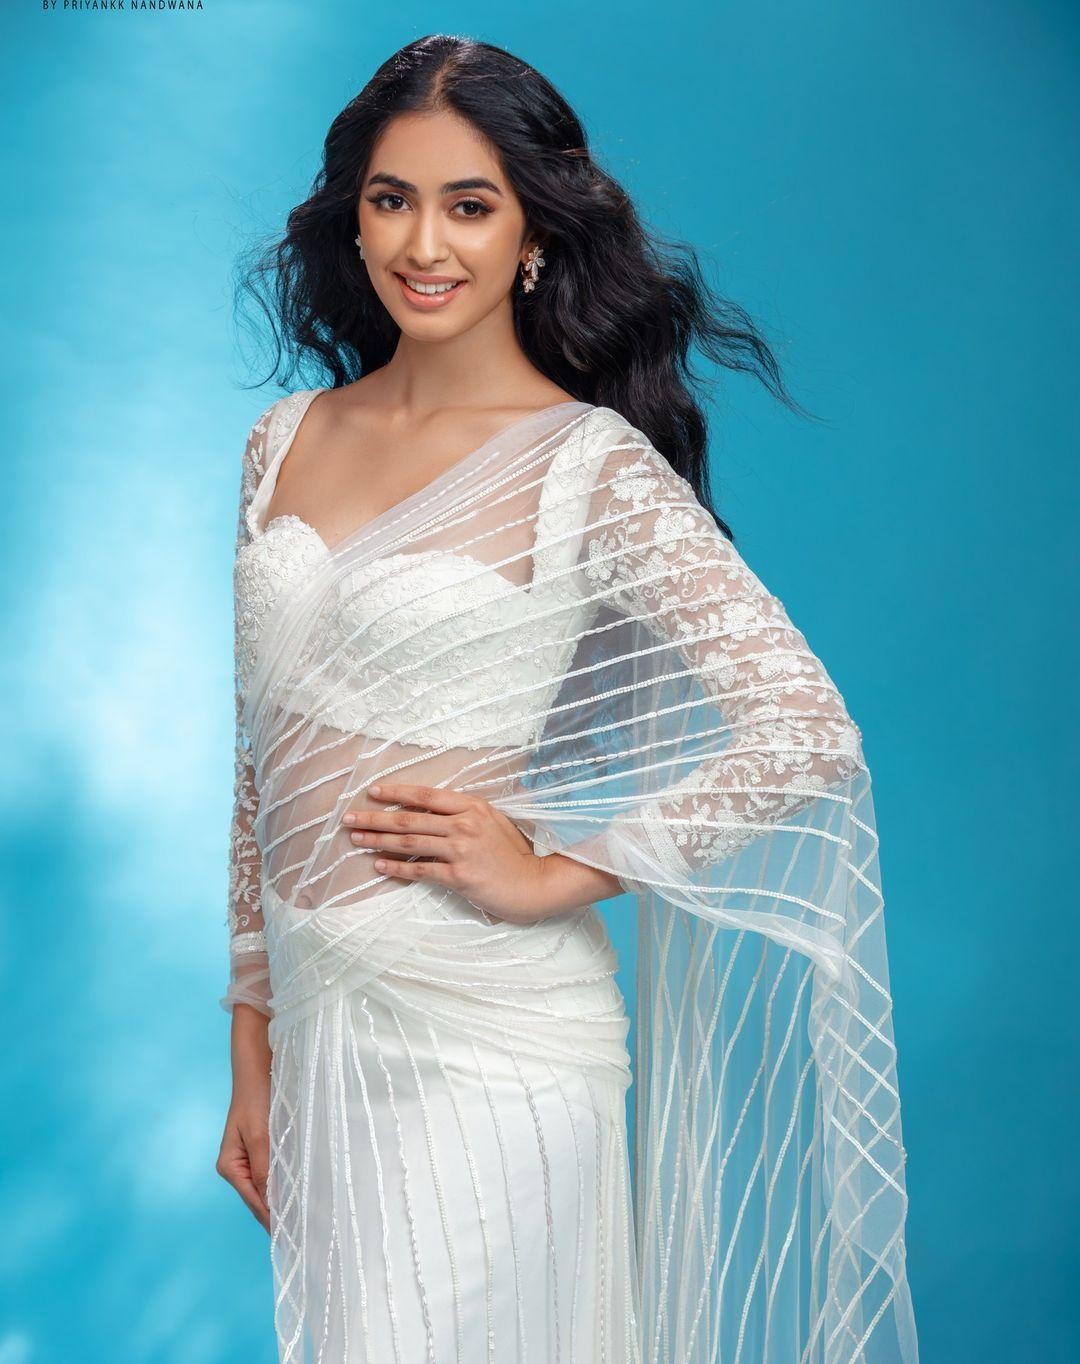 Nhan sắc ngọt ngào, quyến rũ của nữ vũ công vừa đăng quang Hoa hậu Ấn Độ 2022-9